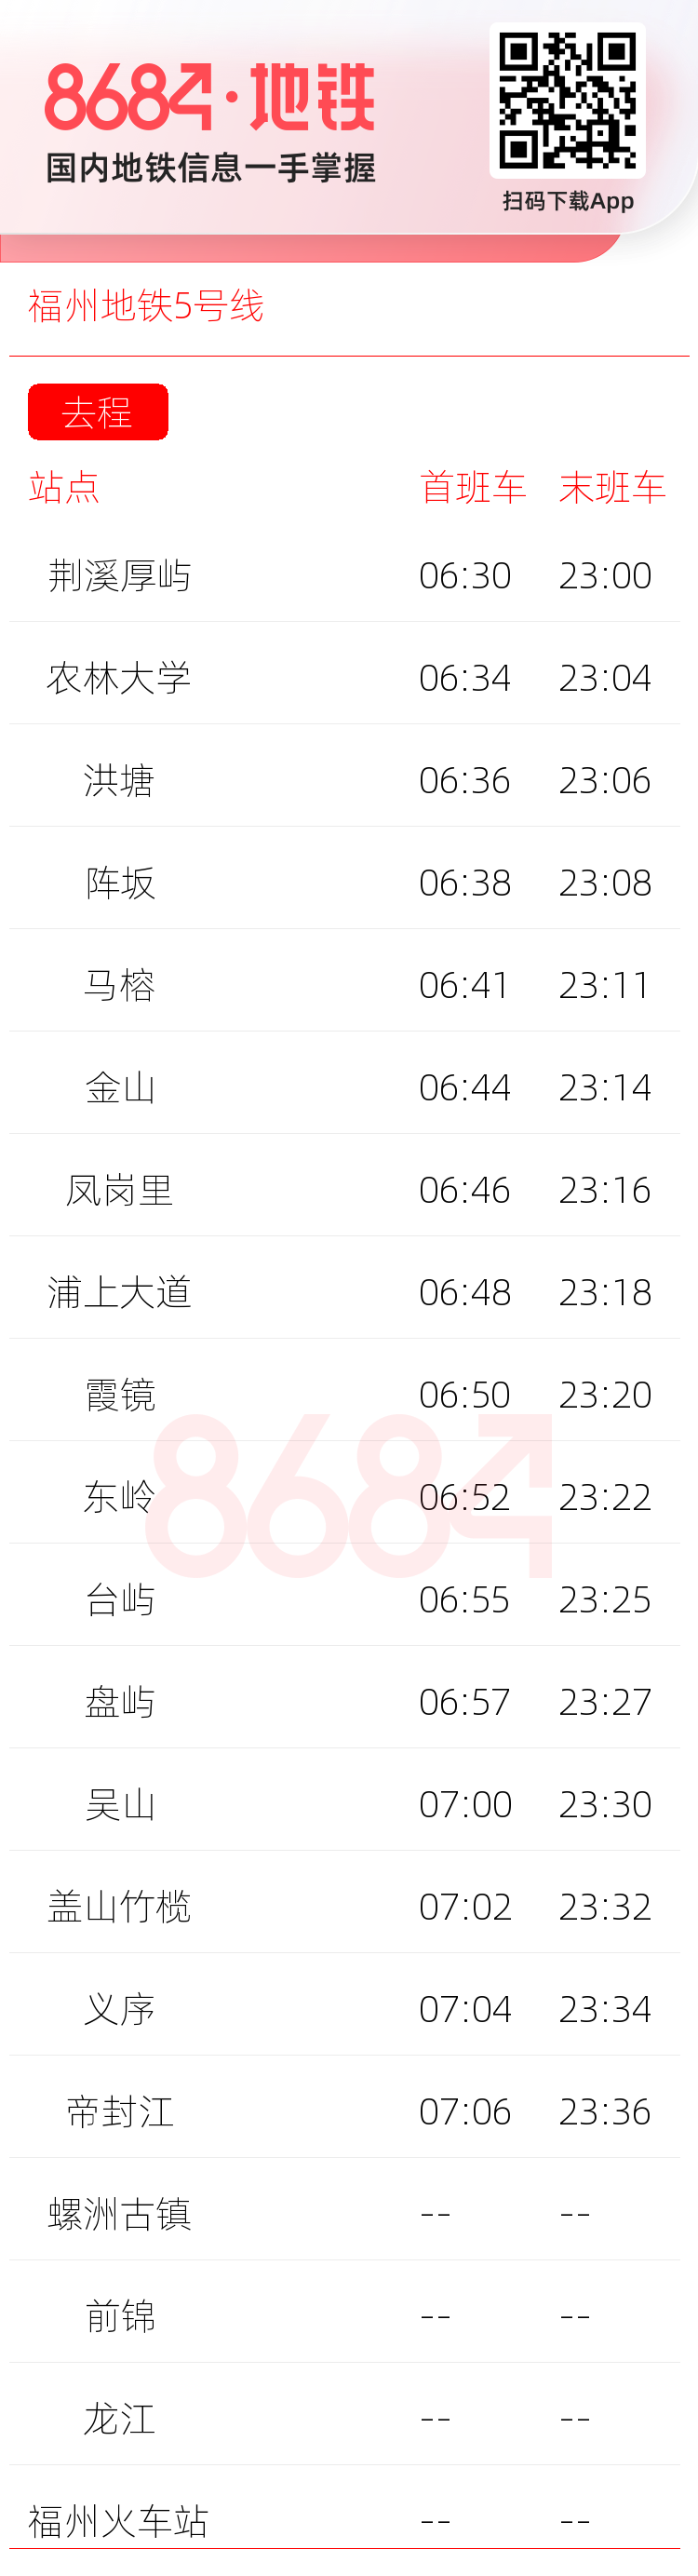 福州地铁5号线运营时间表